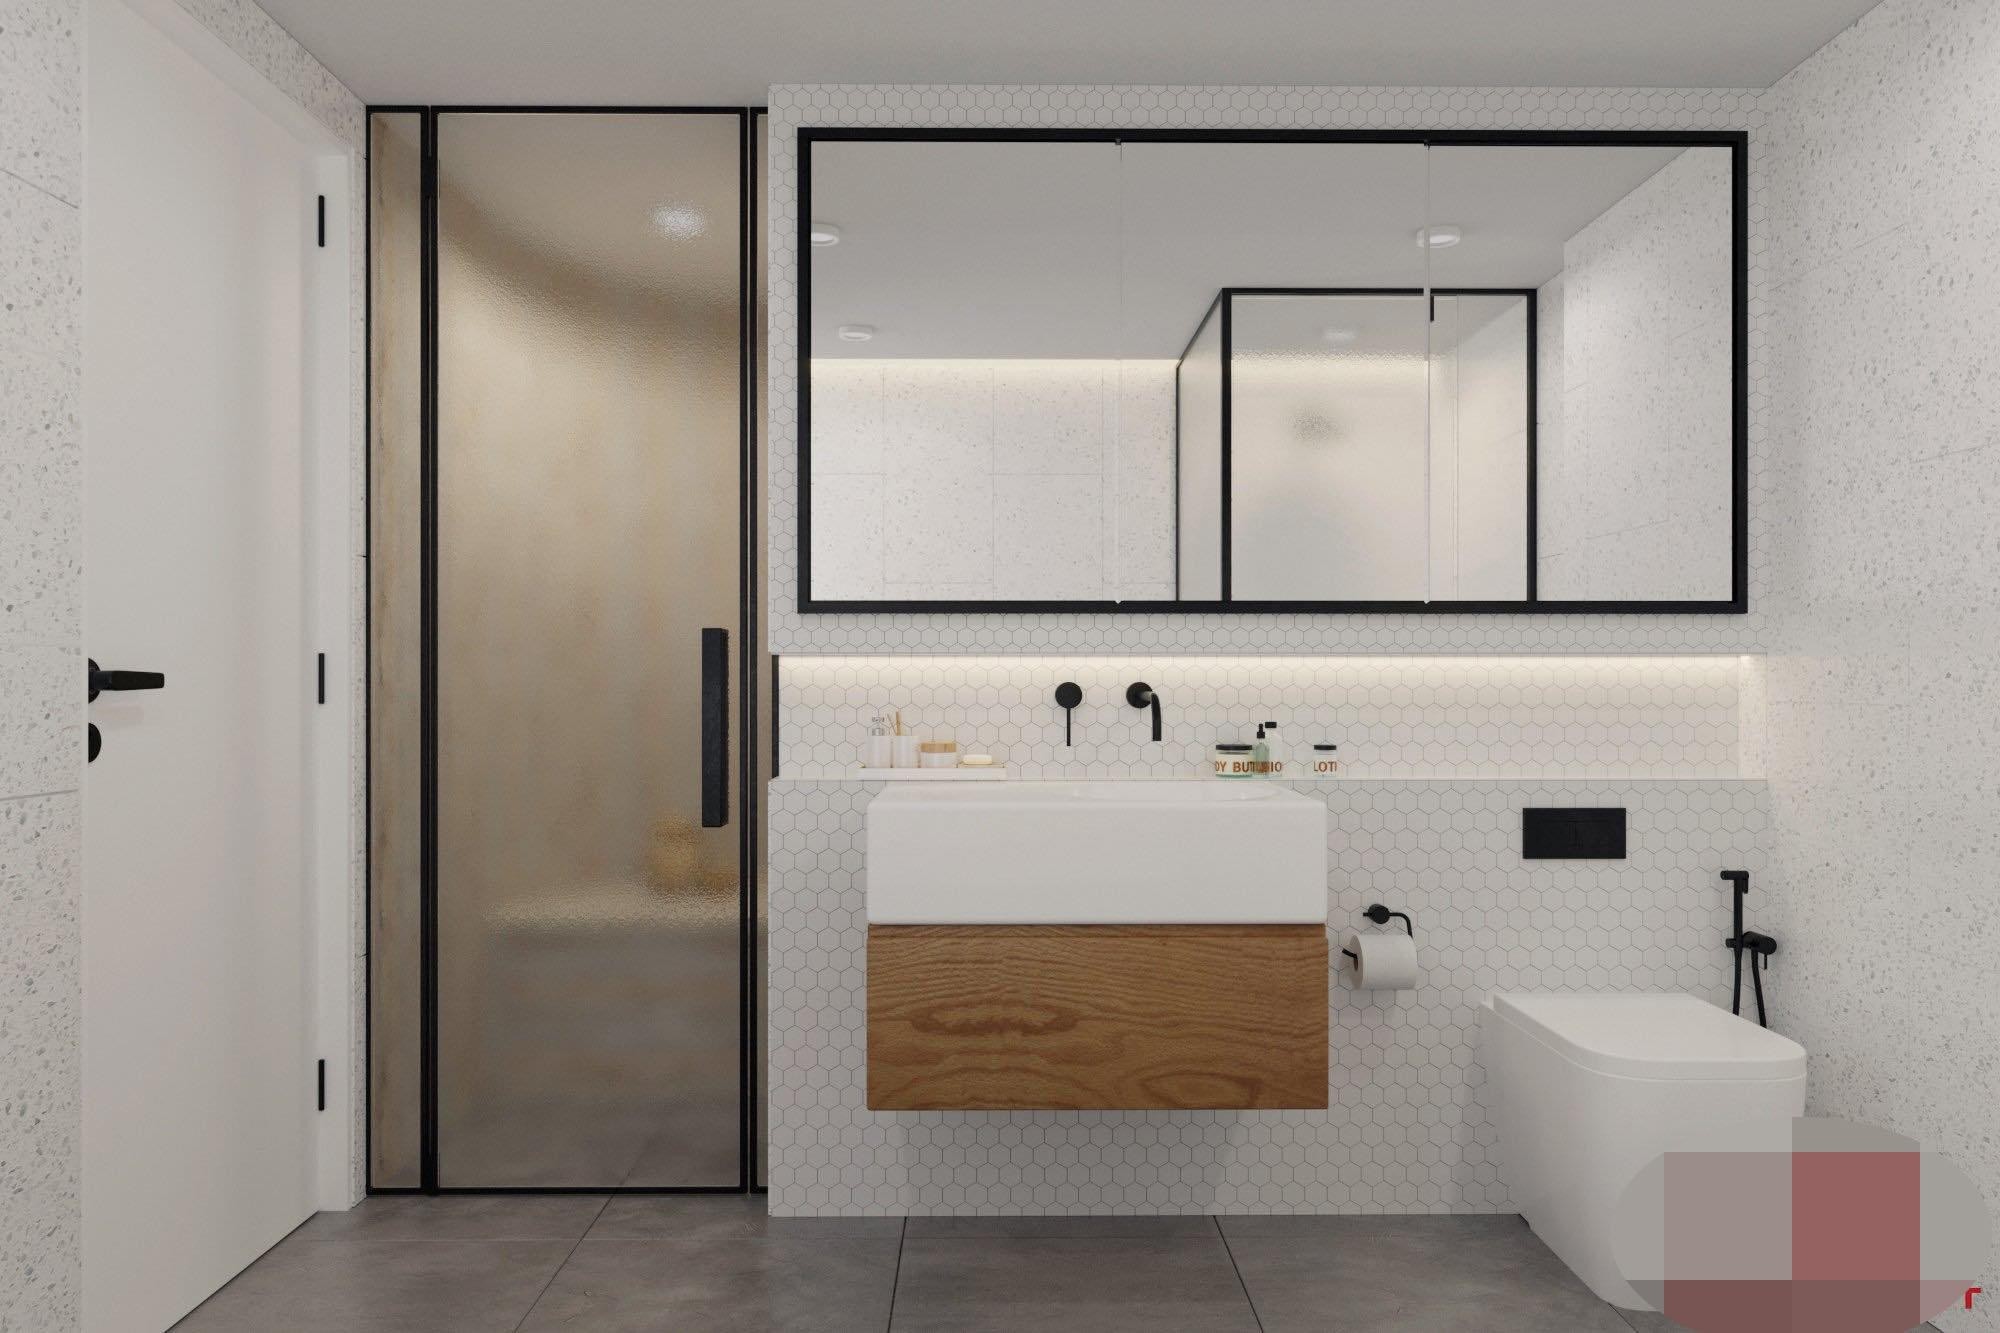 
Một phòng tắm khác trong nhà được thiết kế cả vách tắm đứng và bồn tắm tròn
